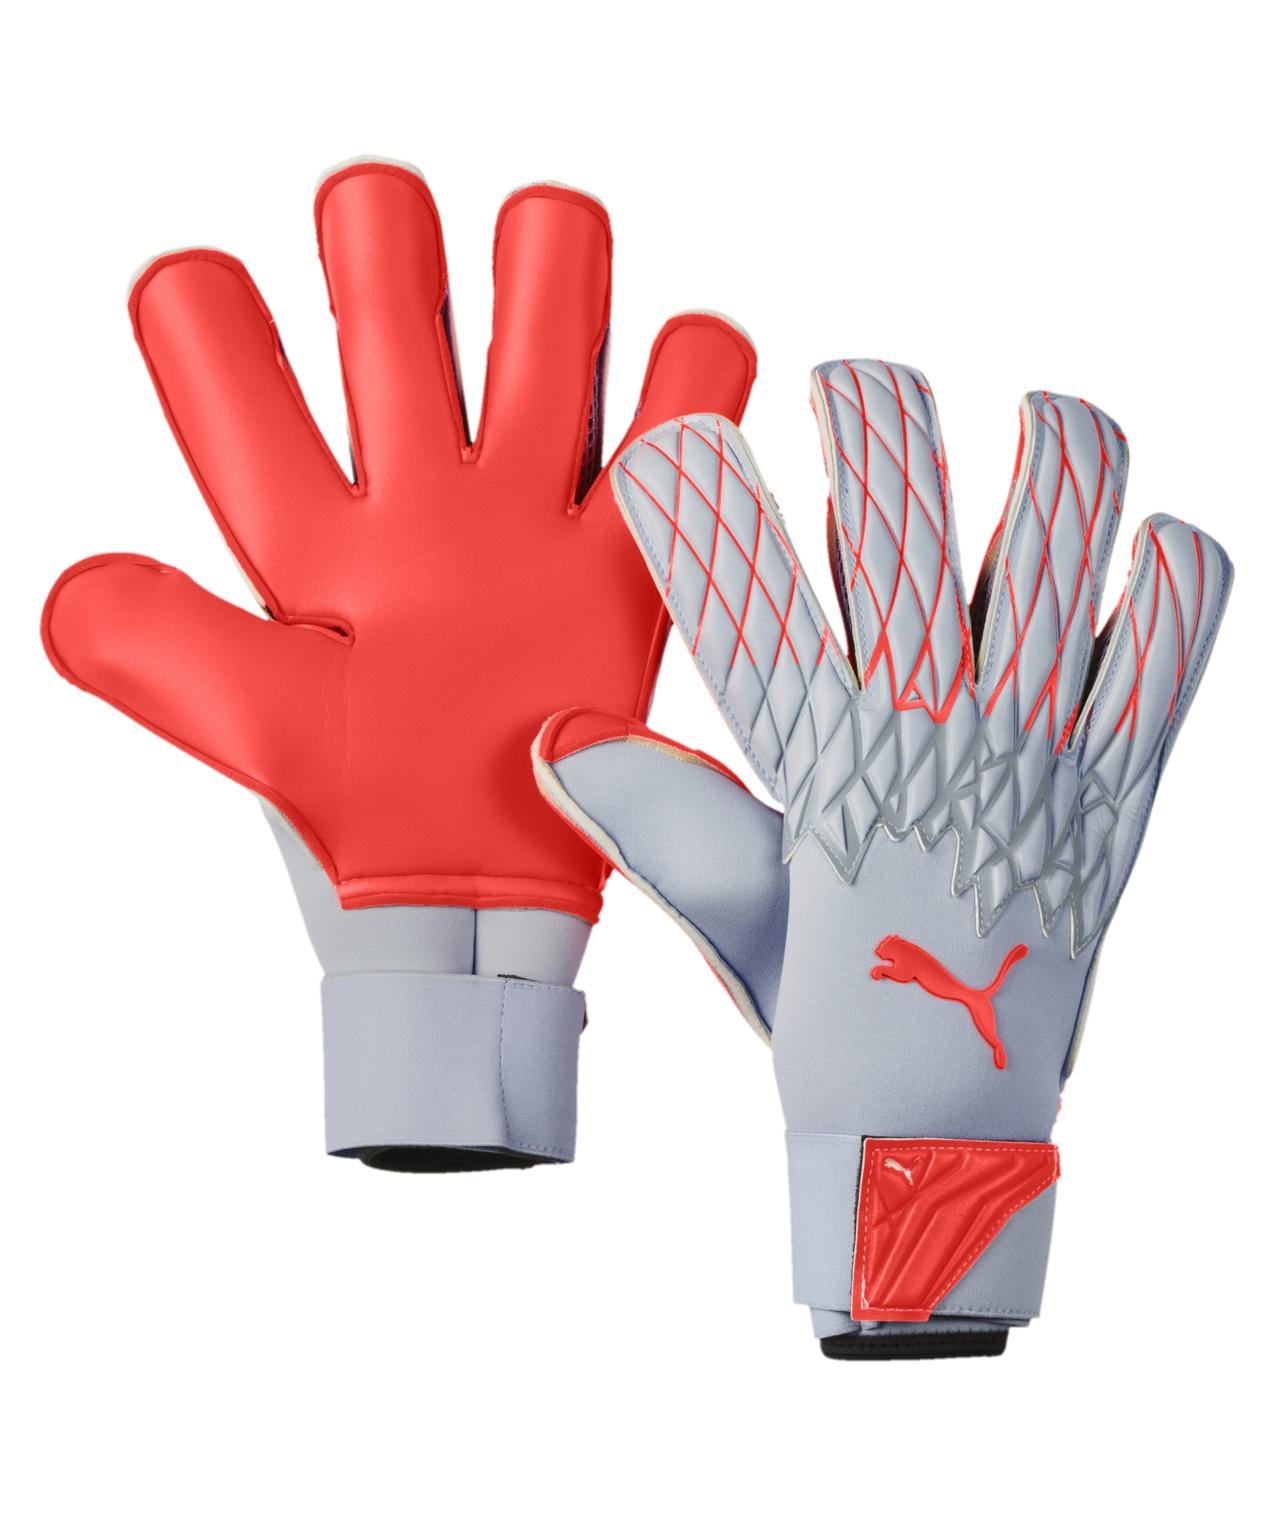  Puma Future Grip 19.2 Goalkeeper Glove